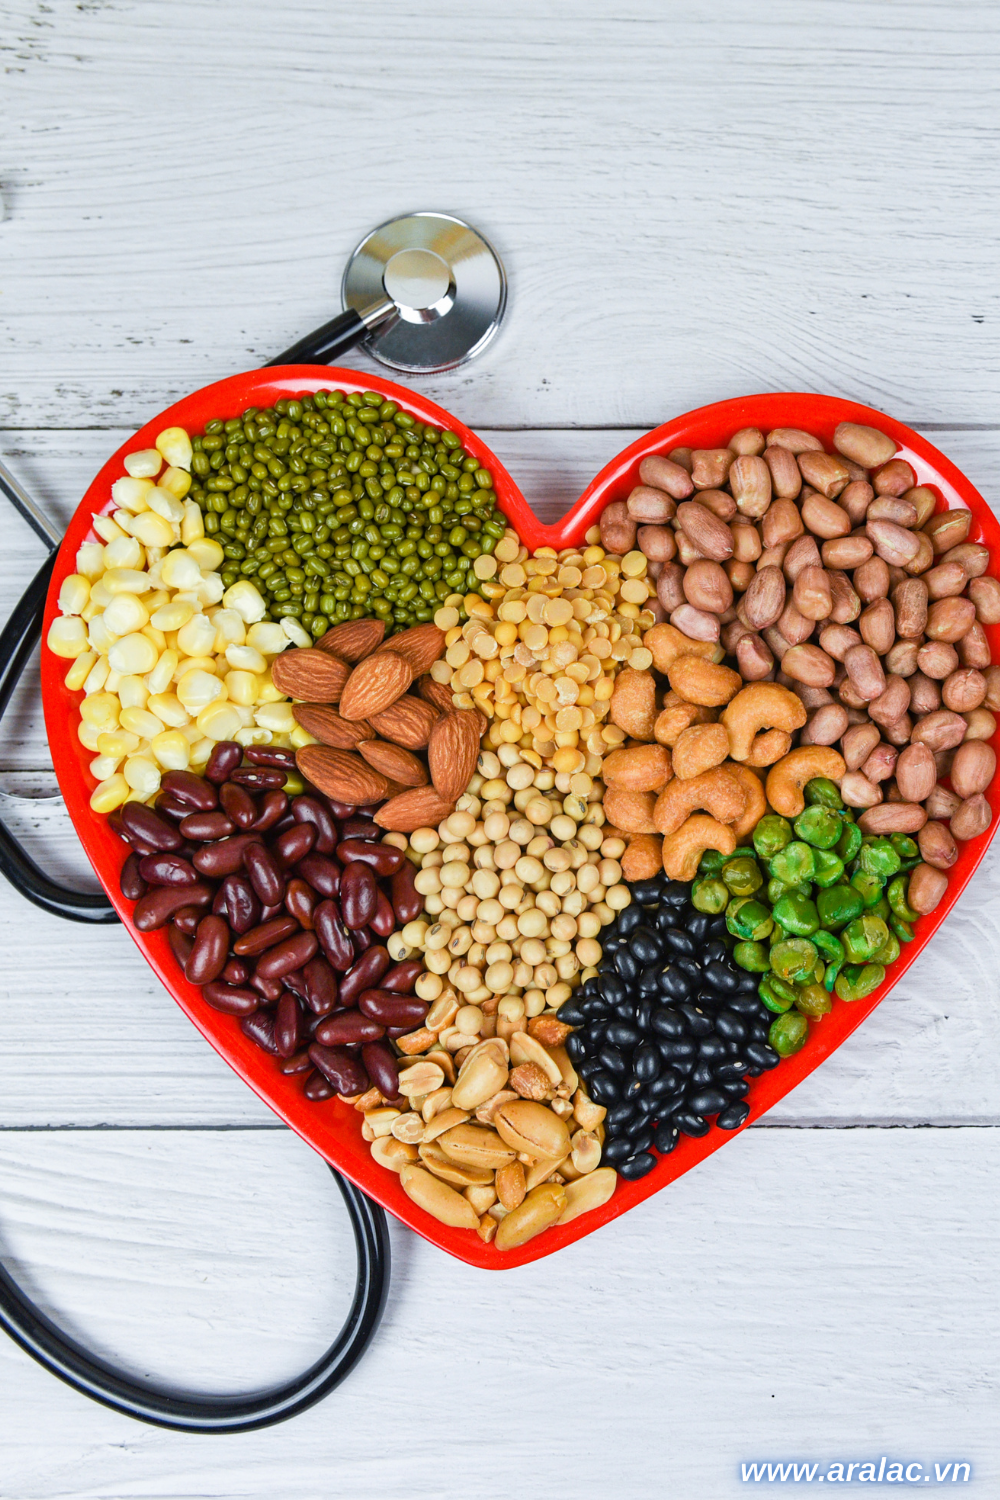 Một trong những lợi ích sức khỏe lớn nhất của ngũ cốc nguyên hạt là chúng làm giảm nguy cơ mắc bệnh tim